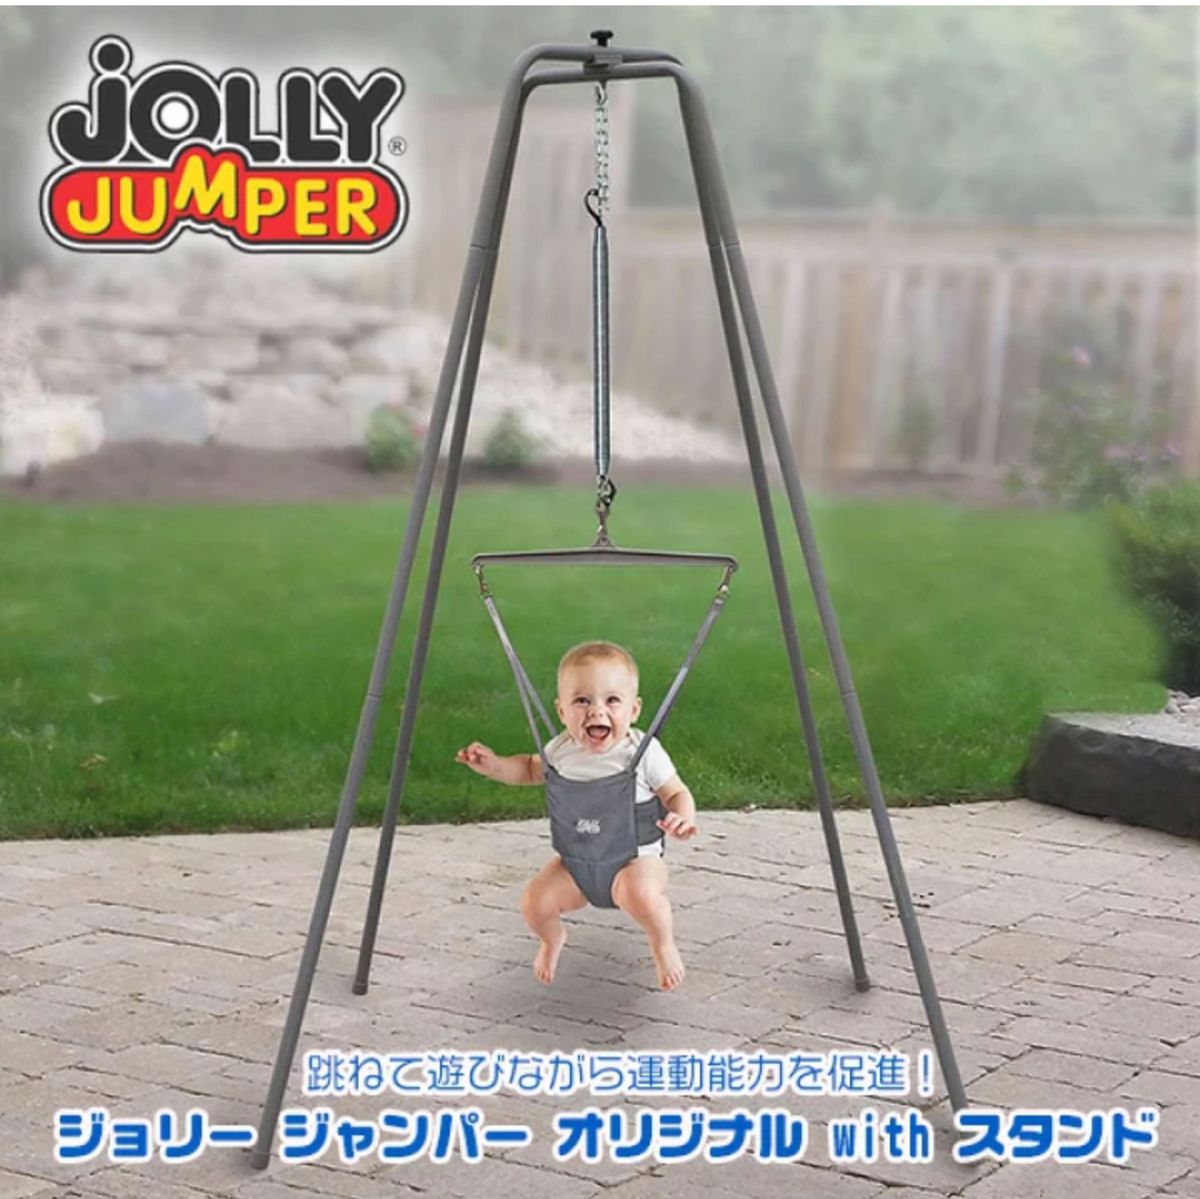 ジョリージャンパー Jolly Jumper with Super Stand